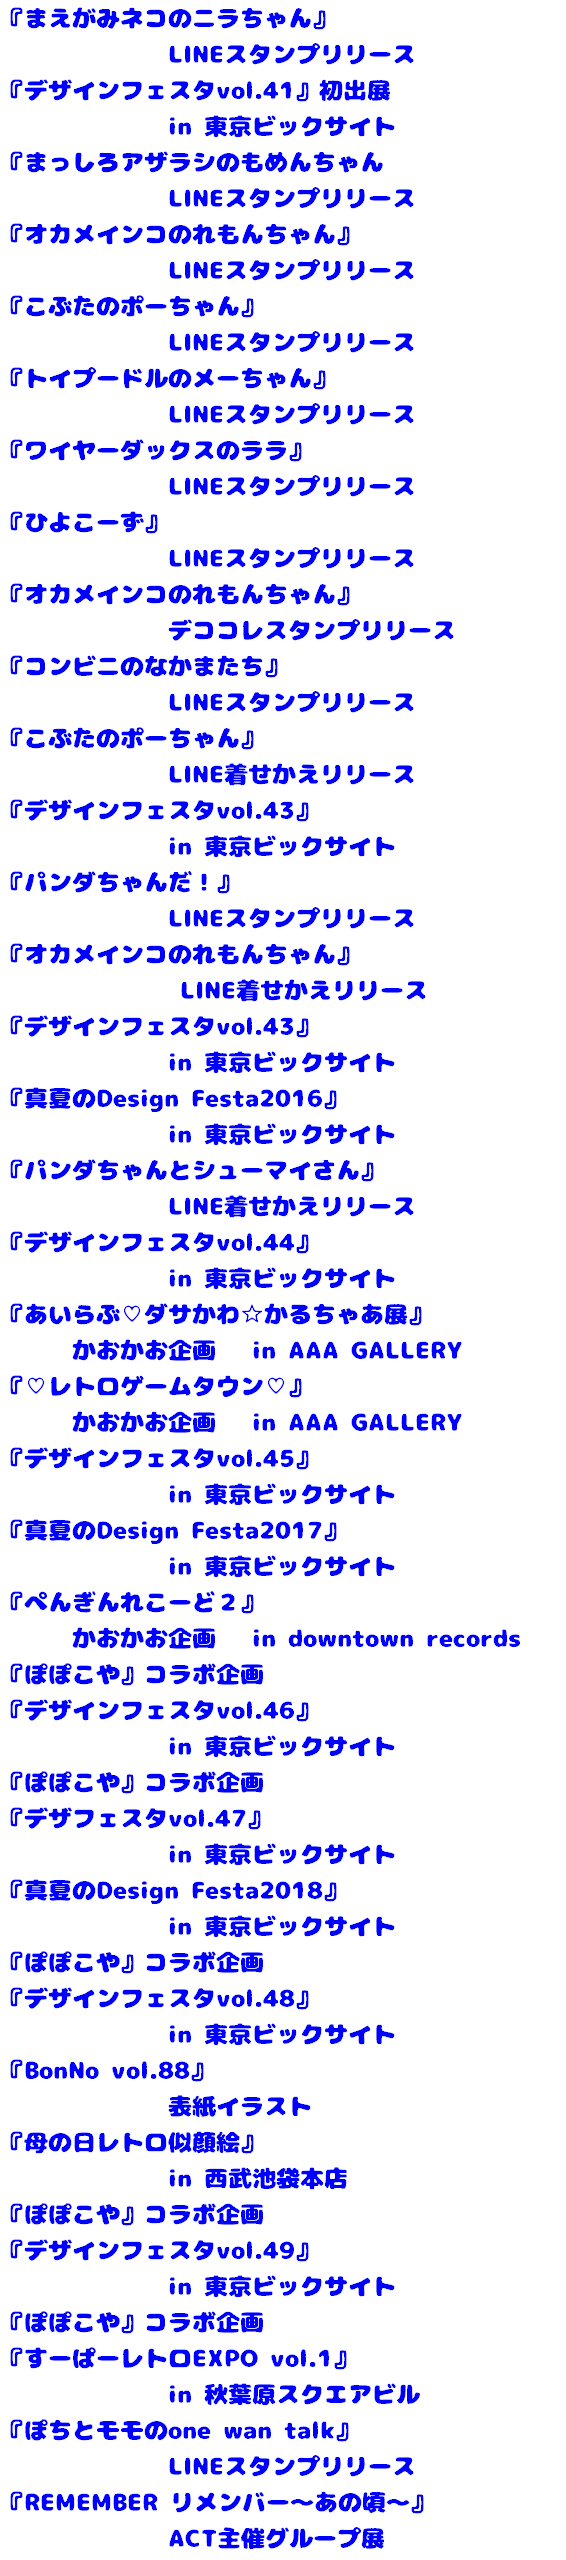 『まえがみネコのニラちゃん』 LINEスタンプリリース 『デザインフェスタvol.41』初出展 in 東京ビックサイト 『まっしろアザラシのもめんちゃん LINEスタンプリリース 『オカメインコのれもんちゃん』 LINEスタンプリリース 『こぶたのポーちゃん』 LINEスタンプリリース 『トイプードルのメーちゃん』 LINEスタンプリリース 『ワイヤーダックスのララ』 LINEスタンプリリース 『ひよこーず』 LINEスタンプリリース 『オカメインコのれもんちゃん』 デココレスタンプリリース 『コンビニのなかまたち』 LINEスタンプリリース 『こぶたのポーちゃん』 LINE着せかえリリース 『デザインフェスタvol.43』 in 東京ビックサイト 『パンダちゃんだ！』 LINEスタンプリリース 『オカメインコのれもんちゃん』 LINE着せかえリリース 『デザインフェスタvol.43』 in 東京ビックサイト 『真夏のDesign Festa2016』 in 東京ビックサイト 『パンダちゃんとシューマイさん』 LINE着せかえリリース 『デザインフェスタvol.44』 in 東京ビックサイト 『あいらぶ♡ダサかわ☆かるちゃあ展』 かおかお企画 in AAA GALLERY 『♡レトロゲームタウン♡』 かおかお企画 in AAA GALLERY 『デザインフェスタvol.45』 in 東京ビックサイト 『真夏のDesign Festa2017』 in 東京ビックサイト 『ぺんぎんれこーど２』 かおかお企画 in downtown records 『ぽぽこや』コラボ企画 『デザインフェスタvol.46』 in 東京ビックサイト 『ぽぽこや』コラボ企画 『デザフェスタvol.47』 in 東京ビックサイト 『真夏のDesign Festa2018』 in 東京ビックサイト 『ぽぽこや』コラボ企画 『デザインフェスタvol.48』 in 東京ビックサイト 『BonNo vol.88』 表紙イラスト 『母の日レトロ似顔絵』 in 西武池袋本店 『ぽぽこや』コラボ企画 『デザインフェスタvol.49』 in 東京ビックサイト 『ぽぽこや』コラボ企画 『すーぱーレトロEXPO vol.1』 in 秋葉原スクエアビル 『ぽちとモモのone wan talk』 LINEスタンプリリース 『REMEMBER リメンバー～あの頃～』 ACT主催グループ展